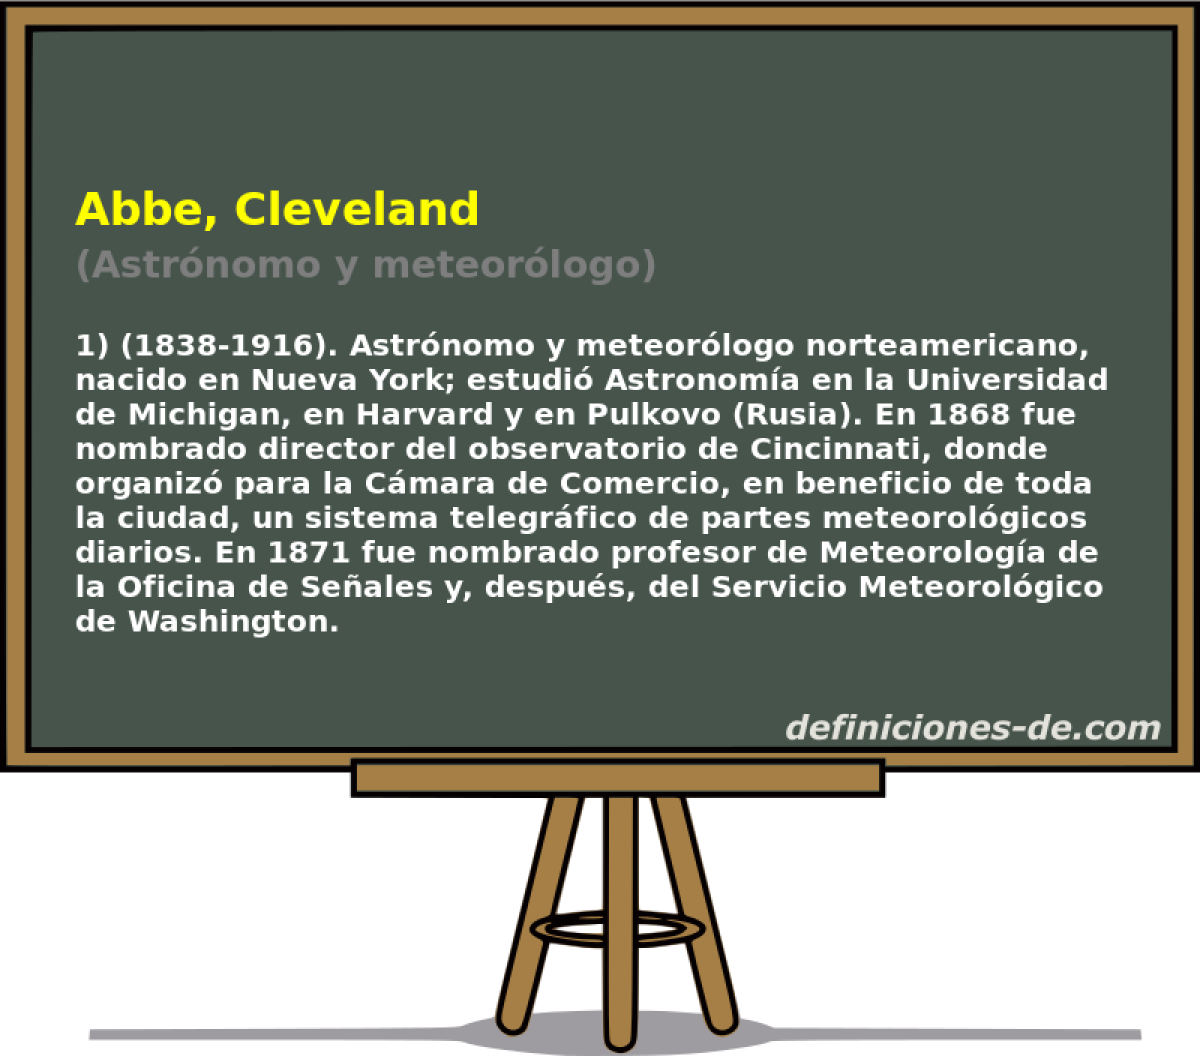 Abbe, Cleveland (Astrnomo y meteorlogo)